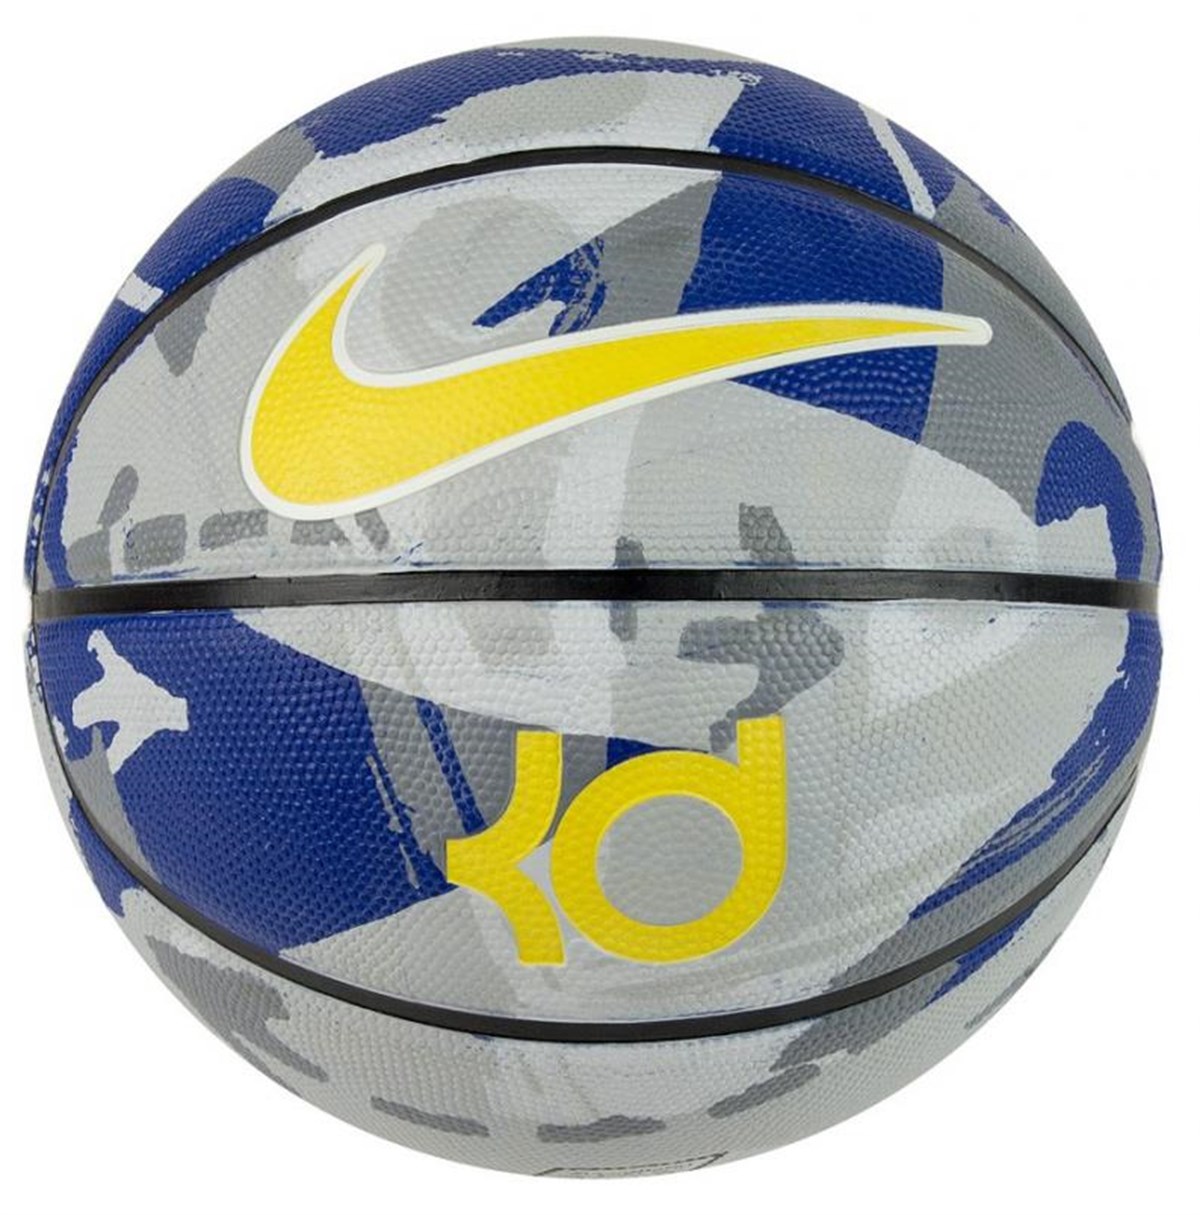 Nike Kd Playground Basketbol Topu NKI13-987